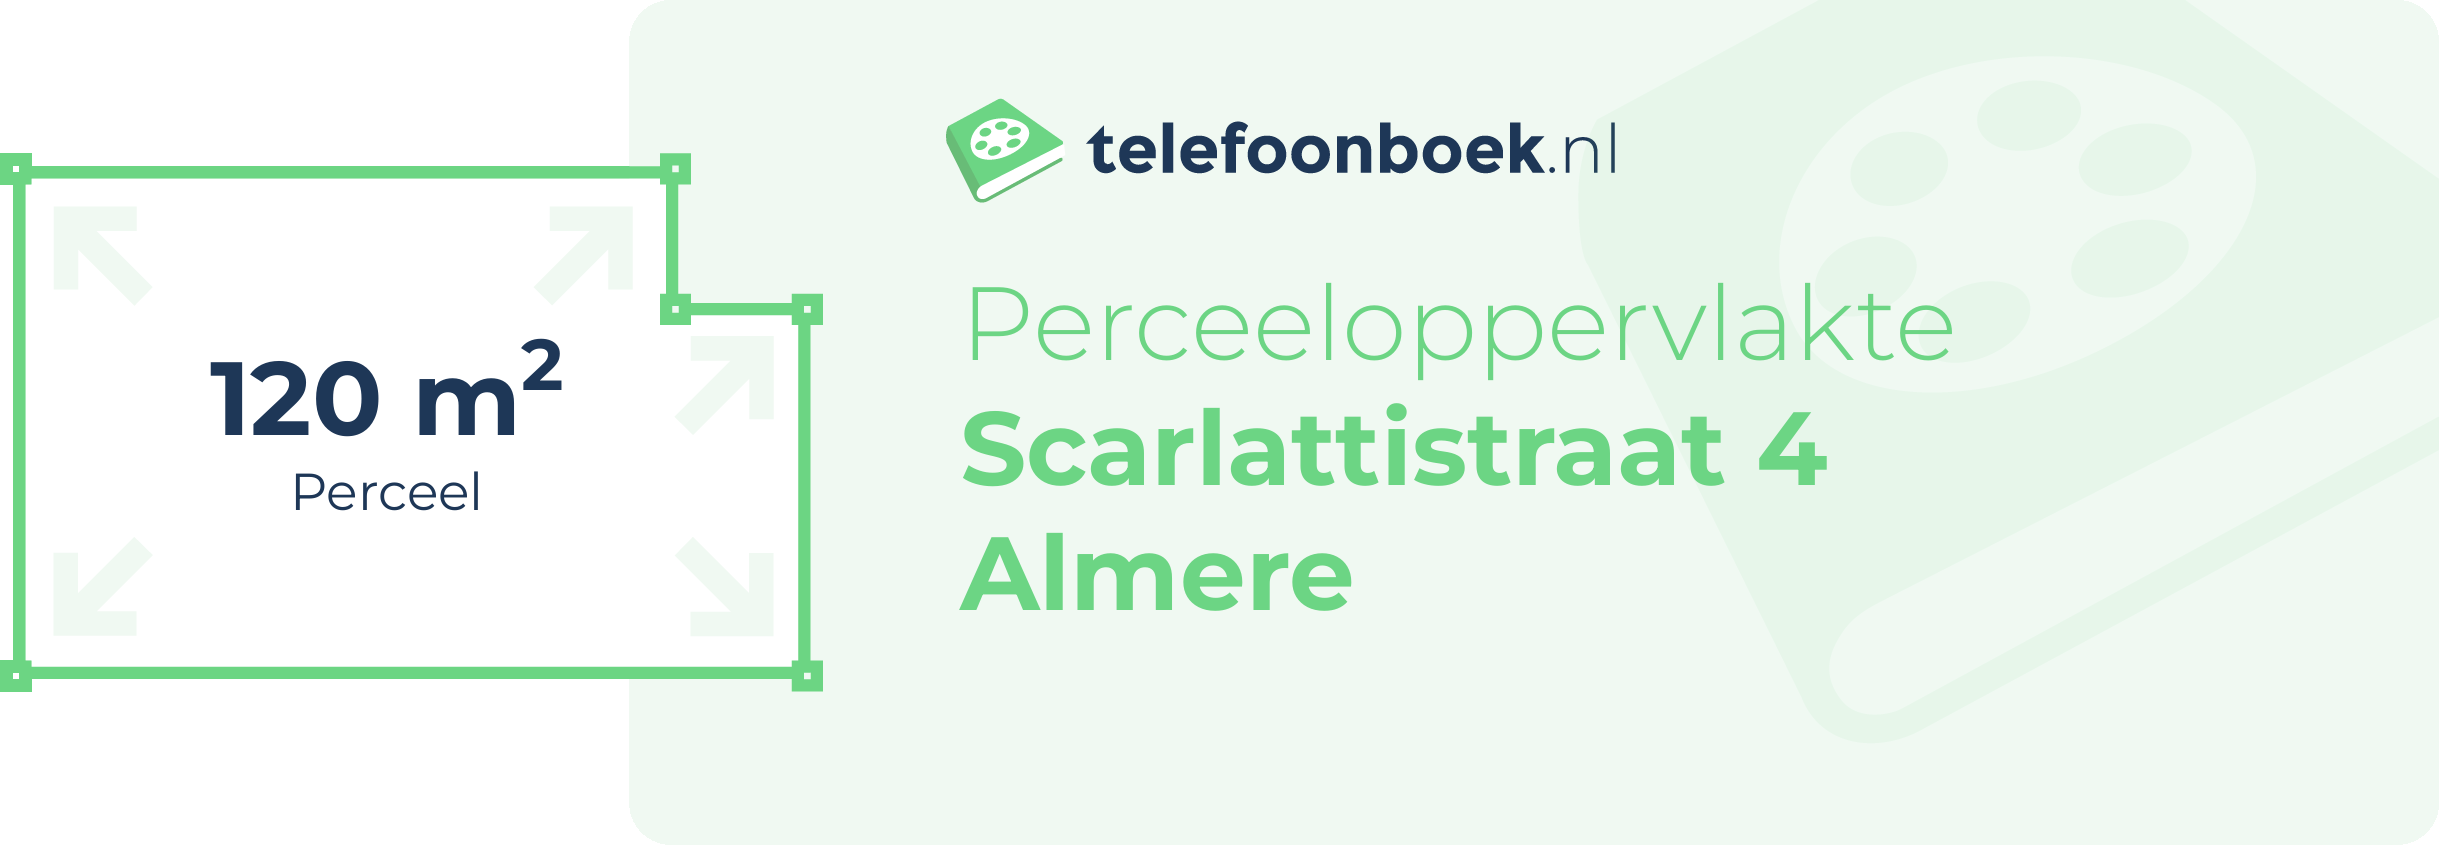 Perceeloppervlakte Scarlattistraat 4 Almere